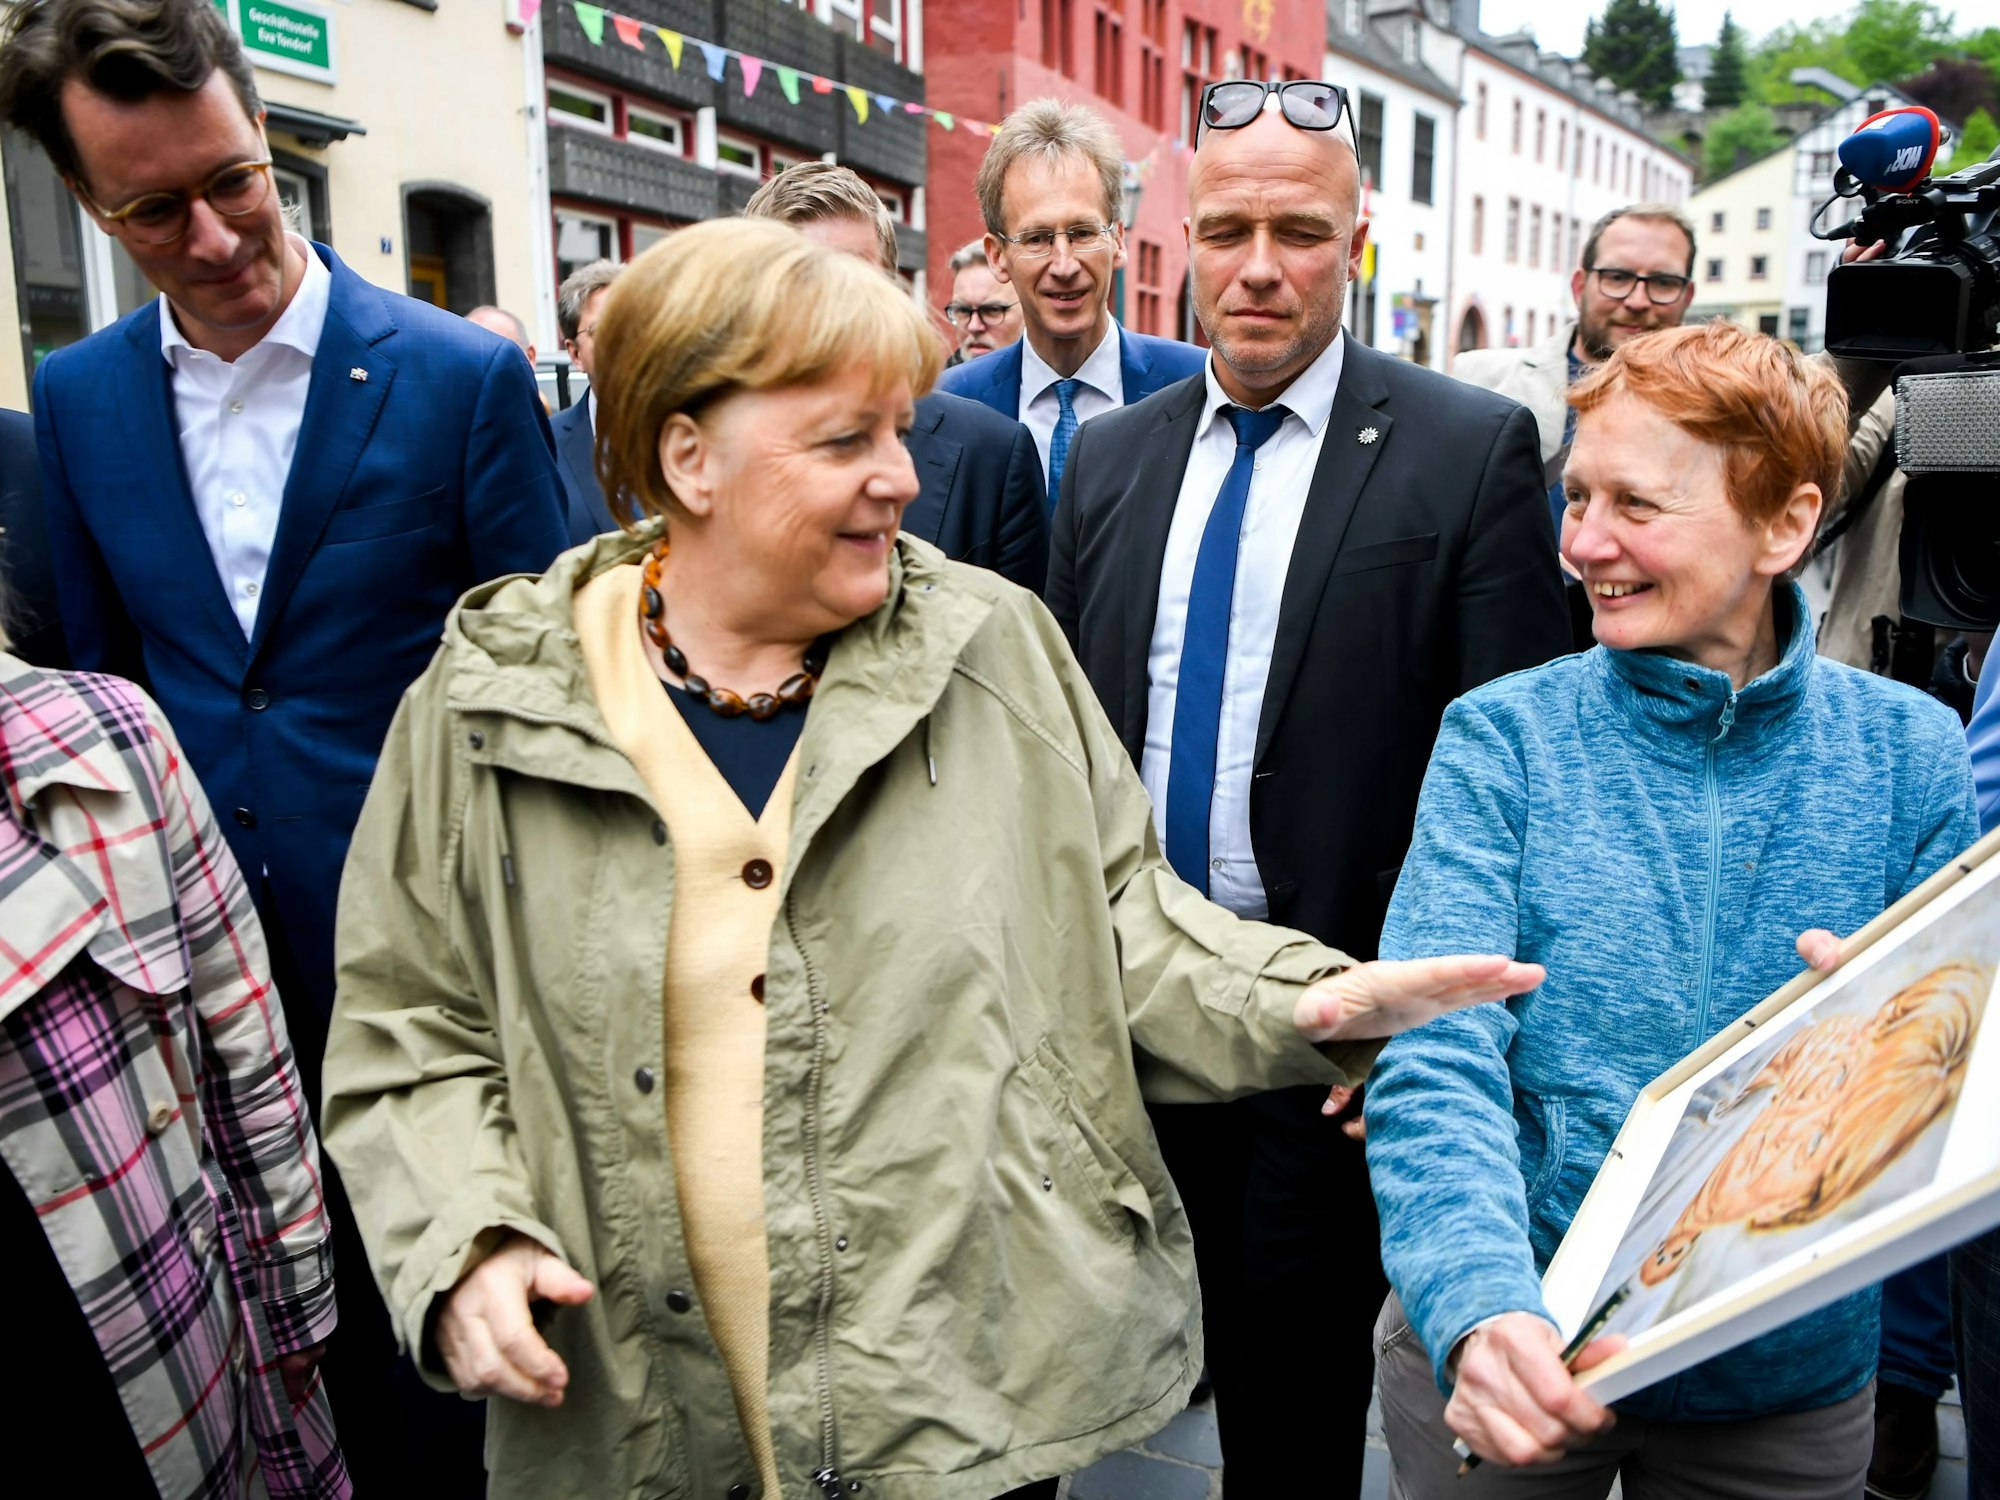 Malerin Gaby Kutz hatte von Angela Merkel ein Bild angefertigt. Bei der Flut war es beschädigt worden. Nun ließ sich Kutz in Bad Münstereifel einen Druck unterschreiben.